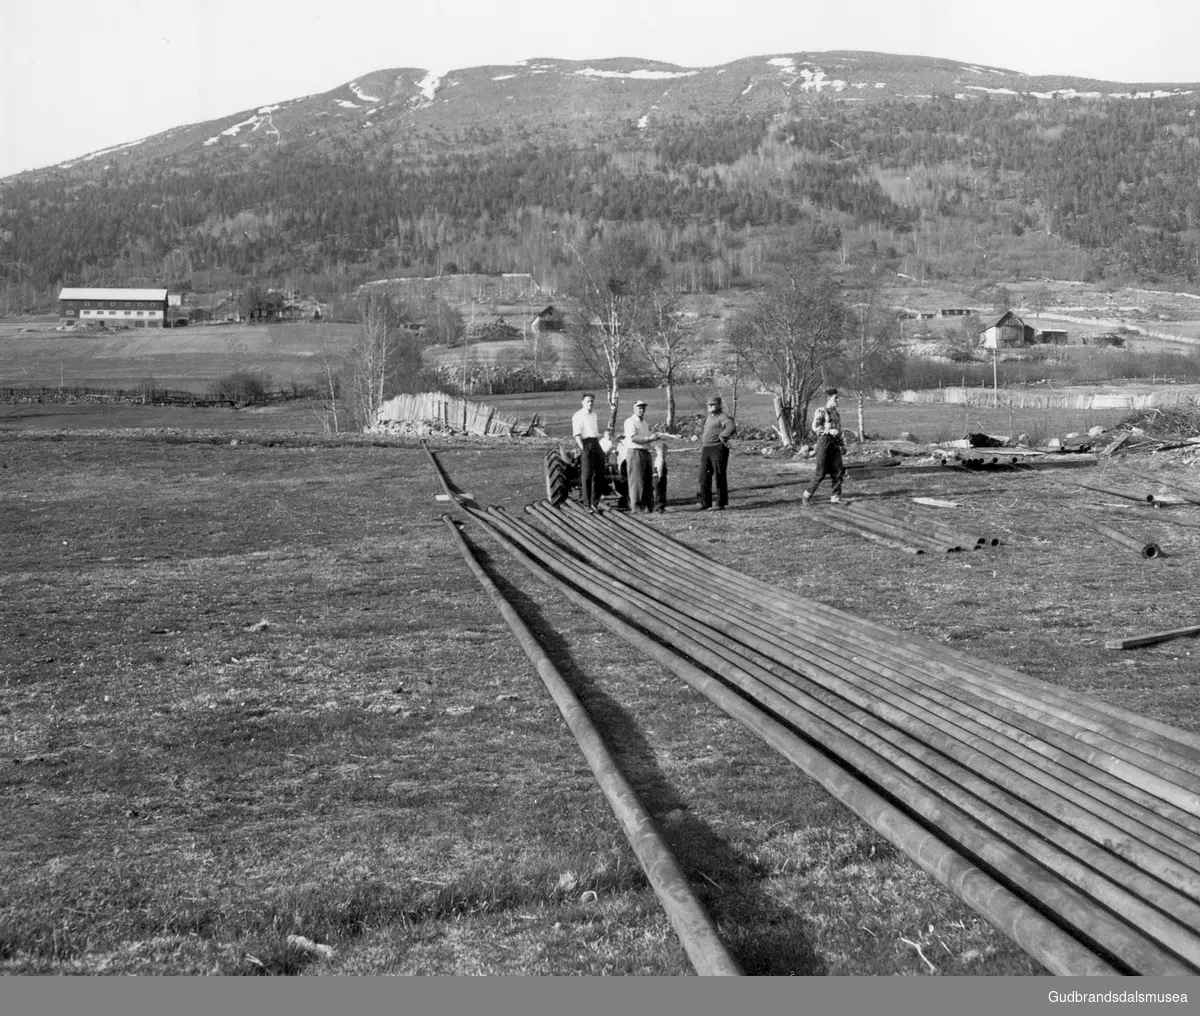 Røyr til nytt  vatningsanlegg på sygard Grimstad.  
F.h.: Olaf Guldbakke (f. 1933), Sverre Blikken (f. 1916)